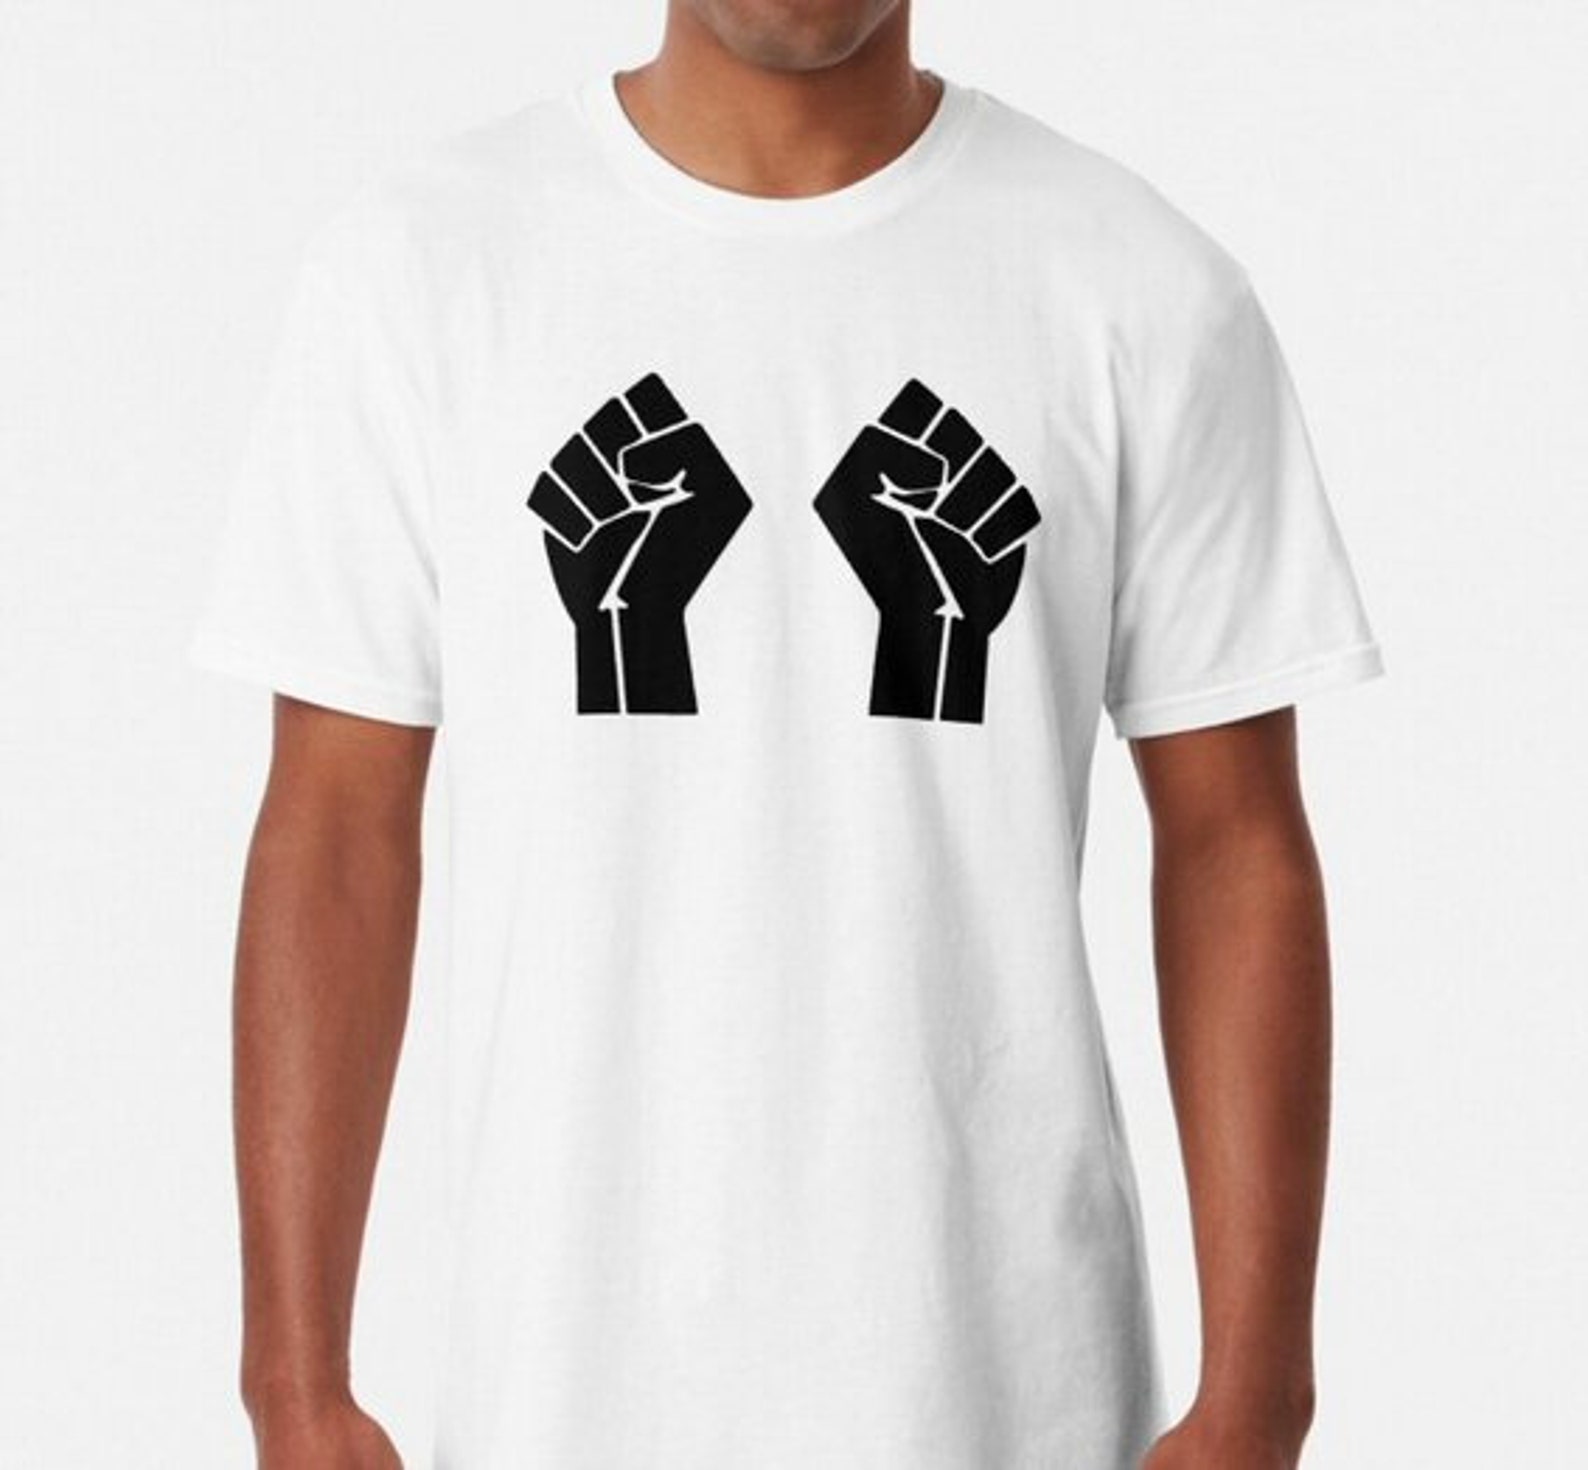 Hands up Don't Shoot Black Lives Matter File Download - Etsy